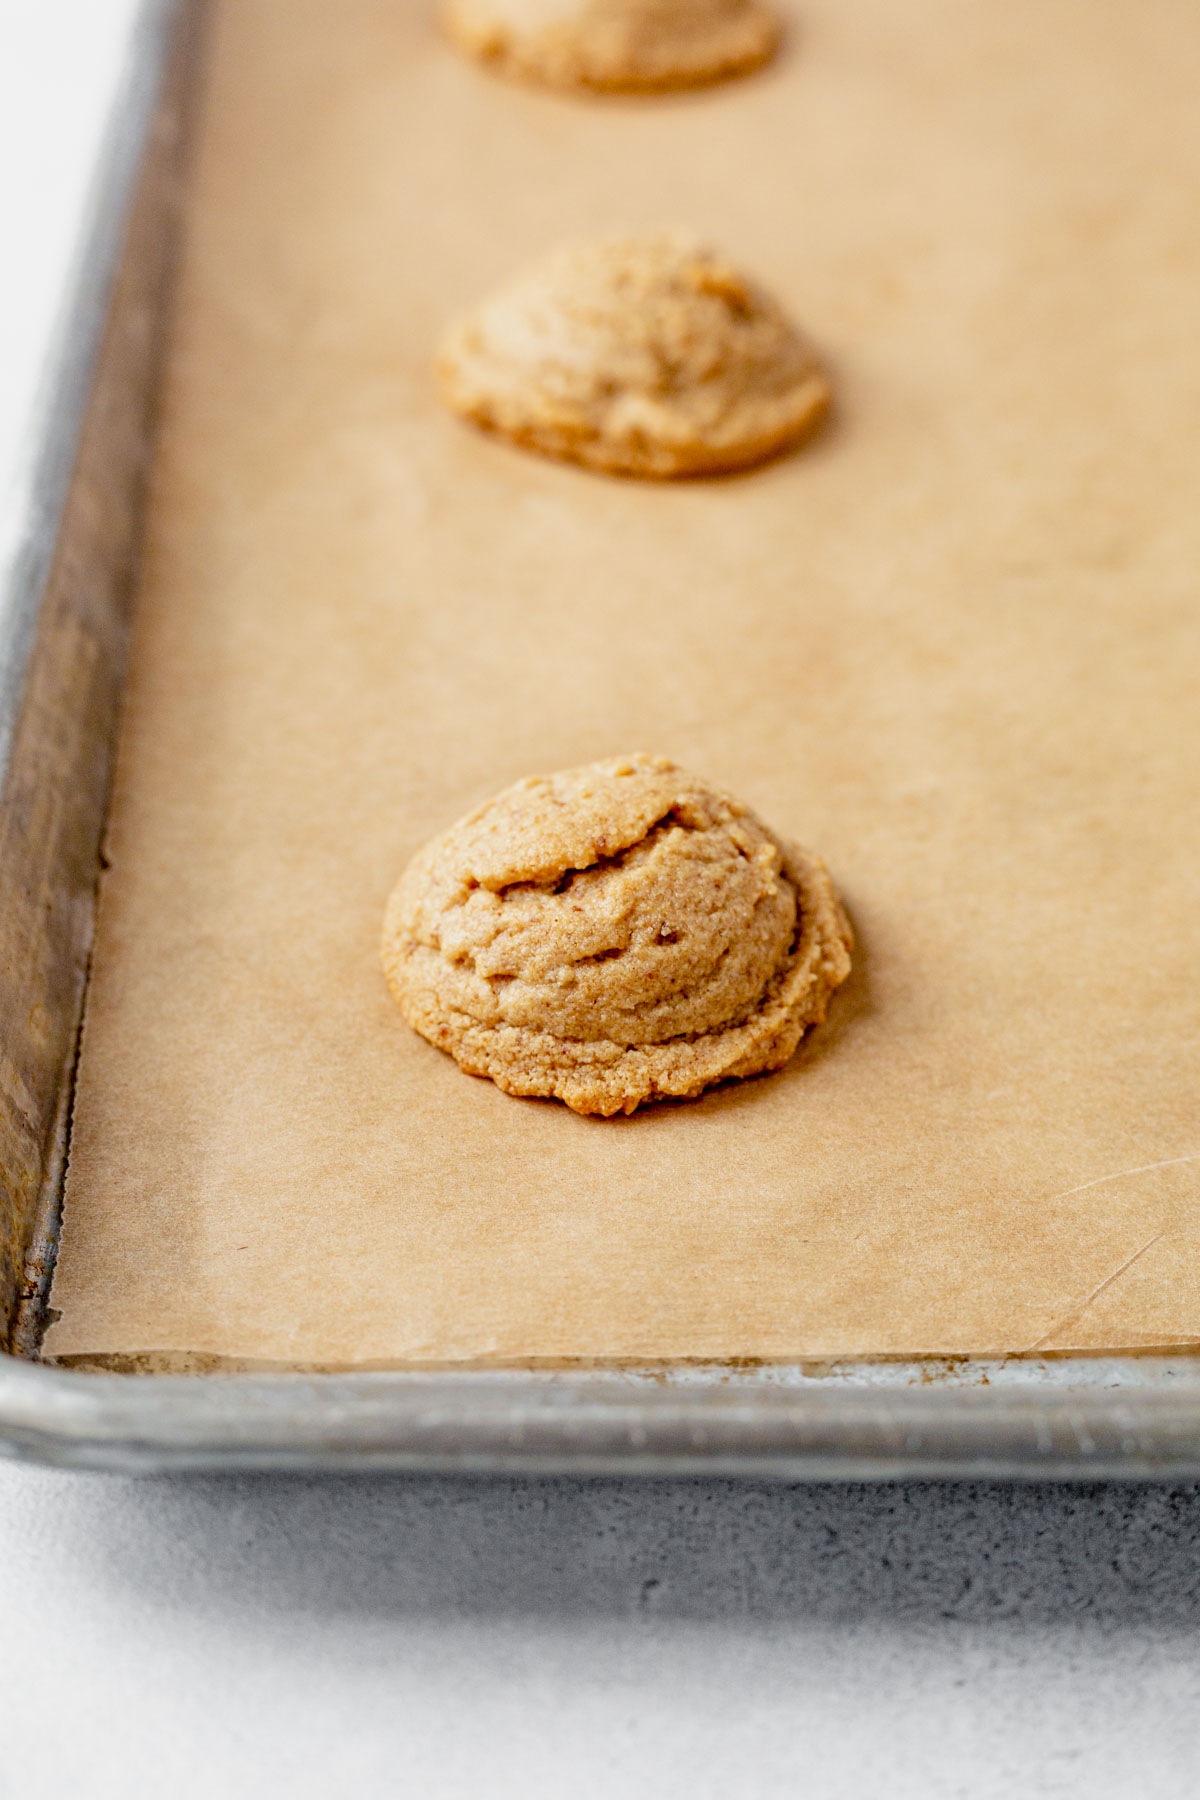 an almond flour peanut butter cookie cooling on a baking sheet